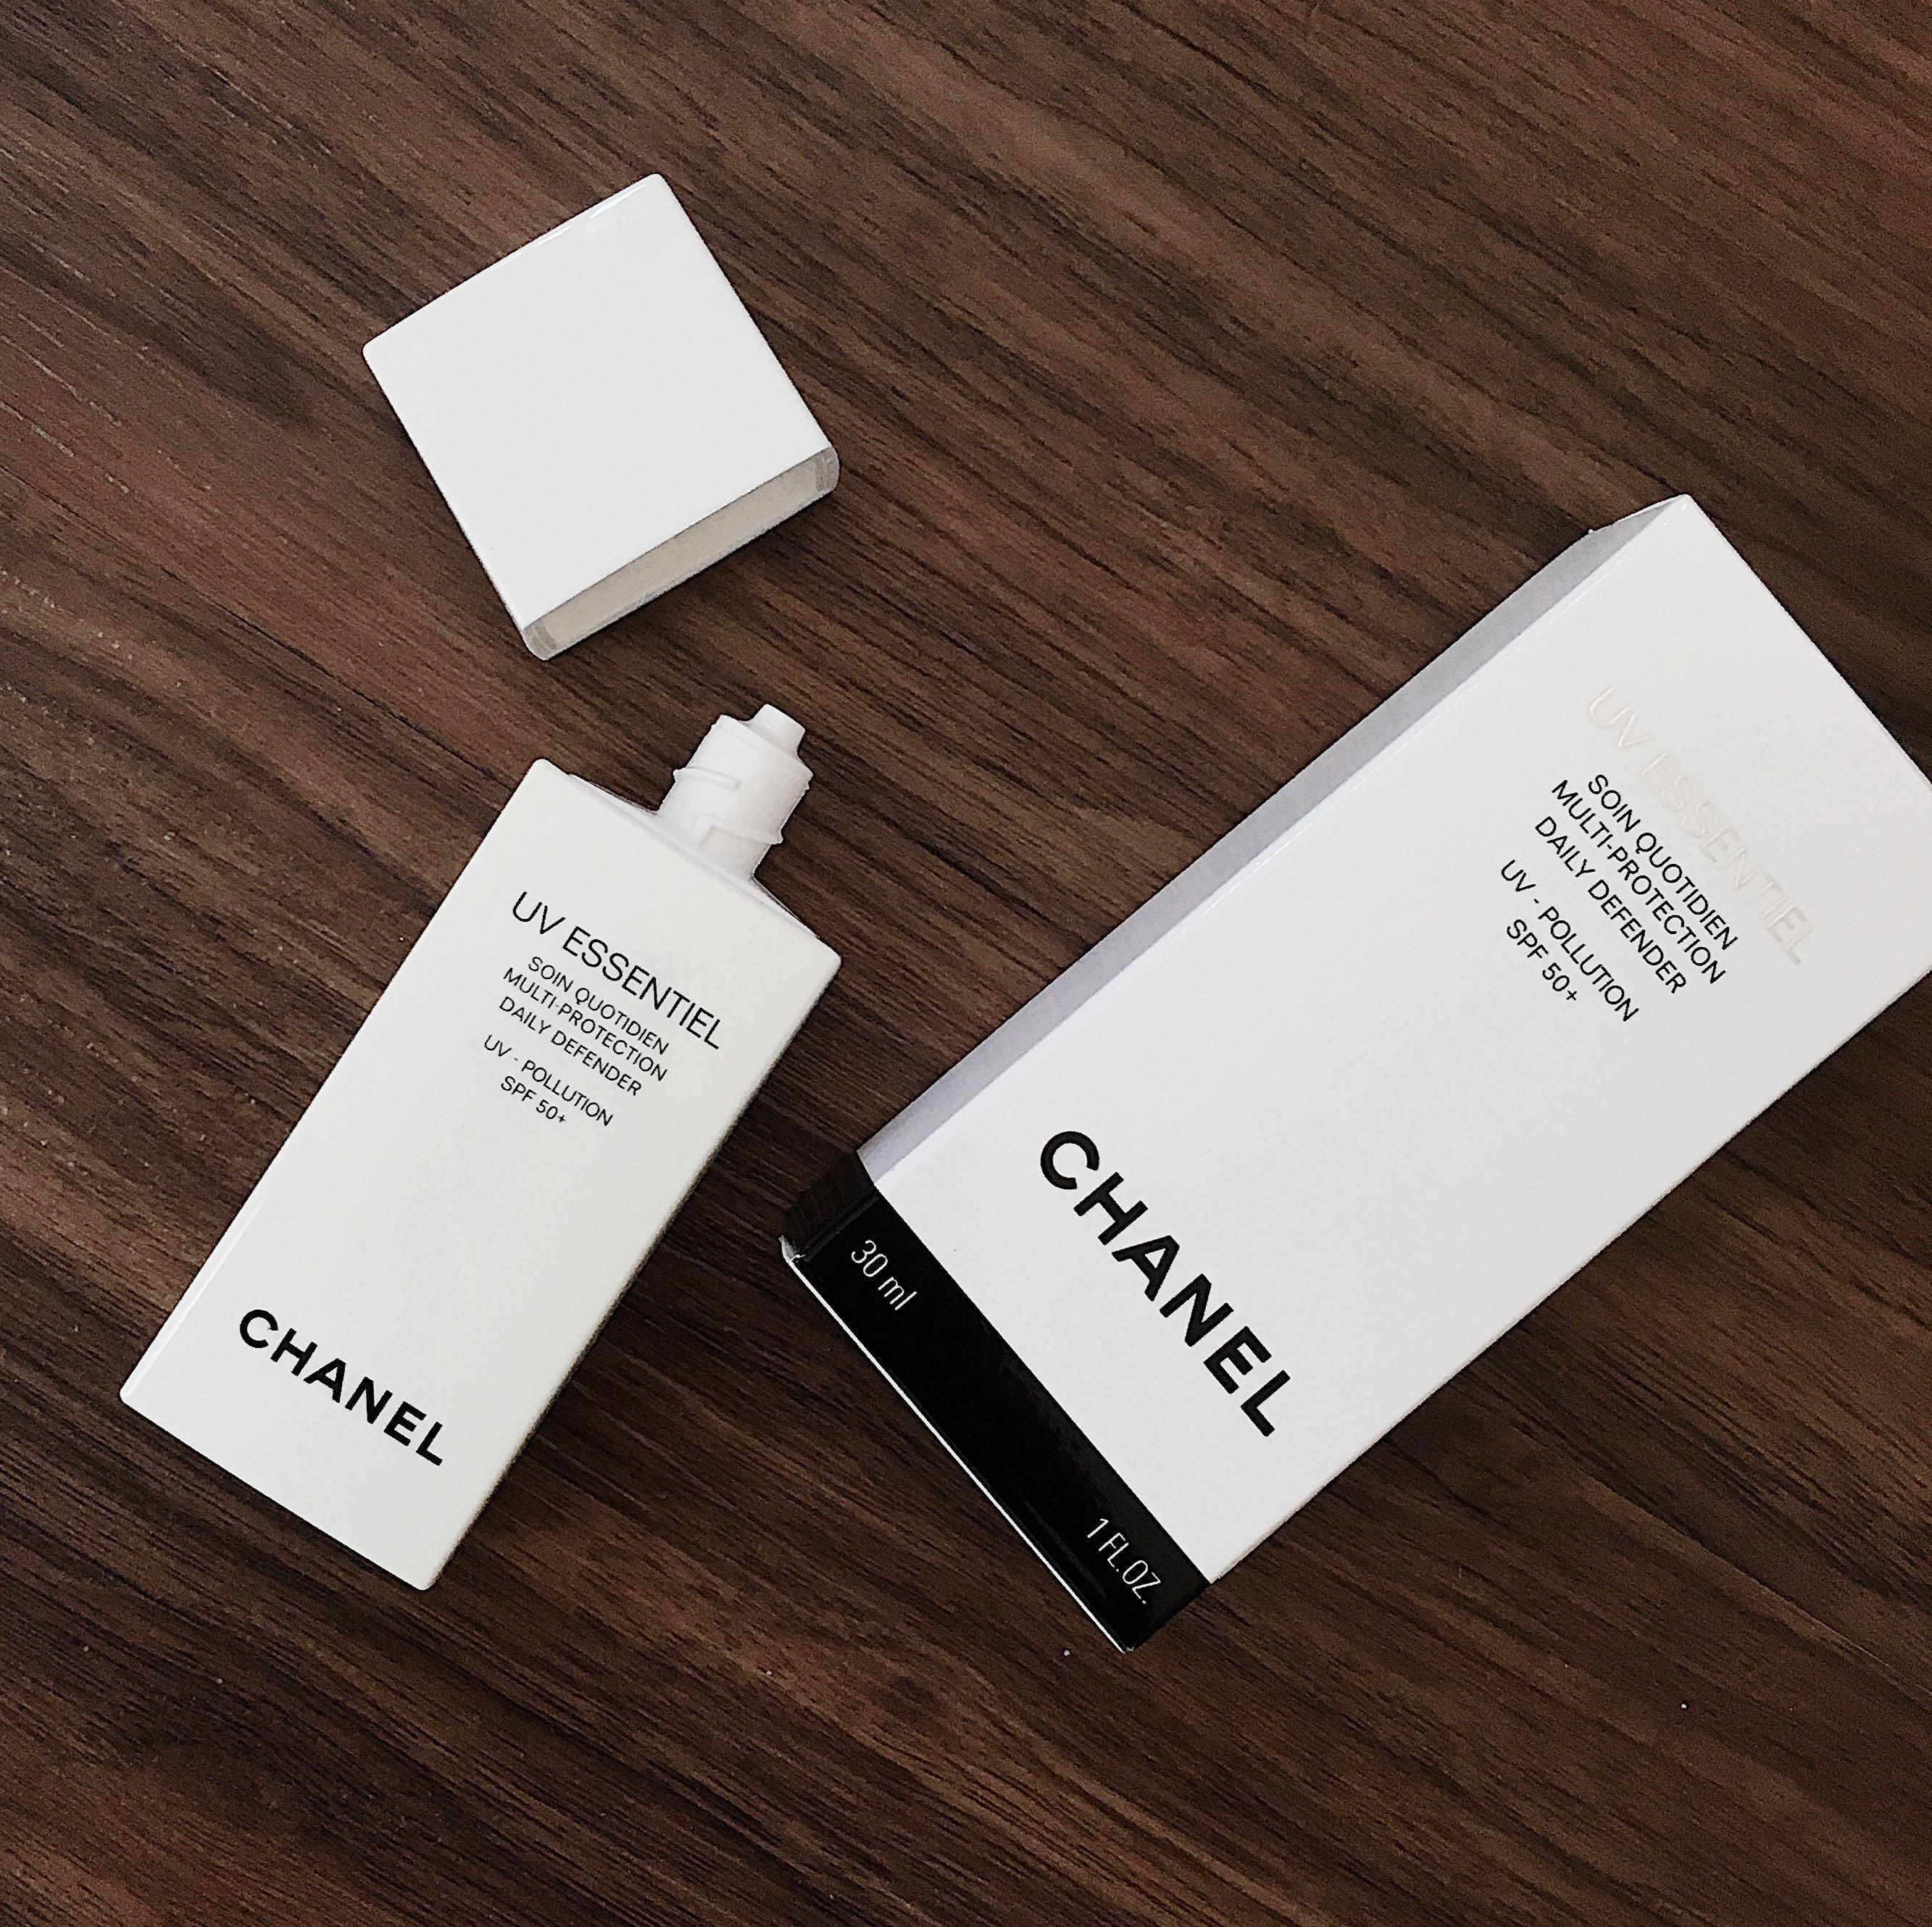 Minh Phương Boutiquee  Kem chống nắng Chanel UV Essentiel spf 50  mẫu mới  dạng tuýp 30ml dùng bao thích  Dòng kem chống nắng cao cấp  bảo vệ da hàng